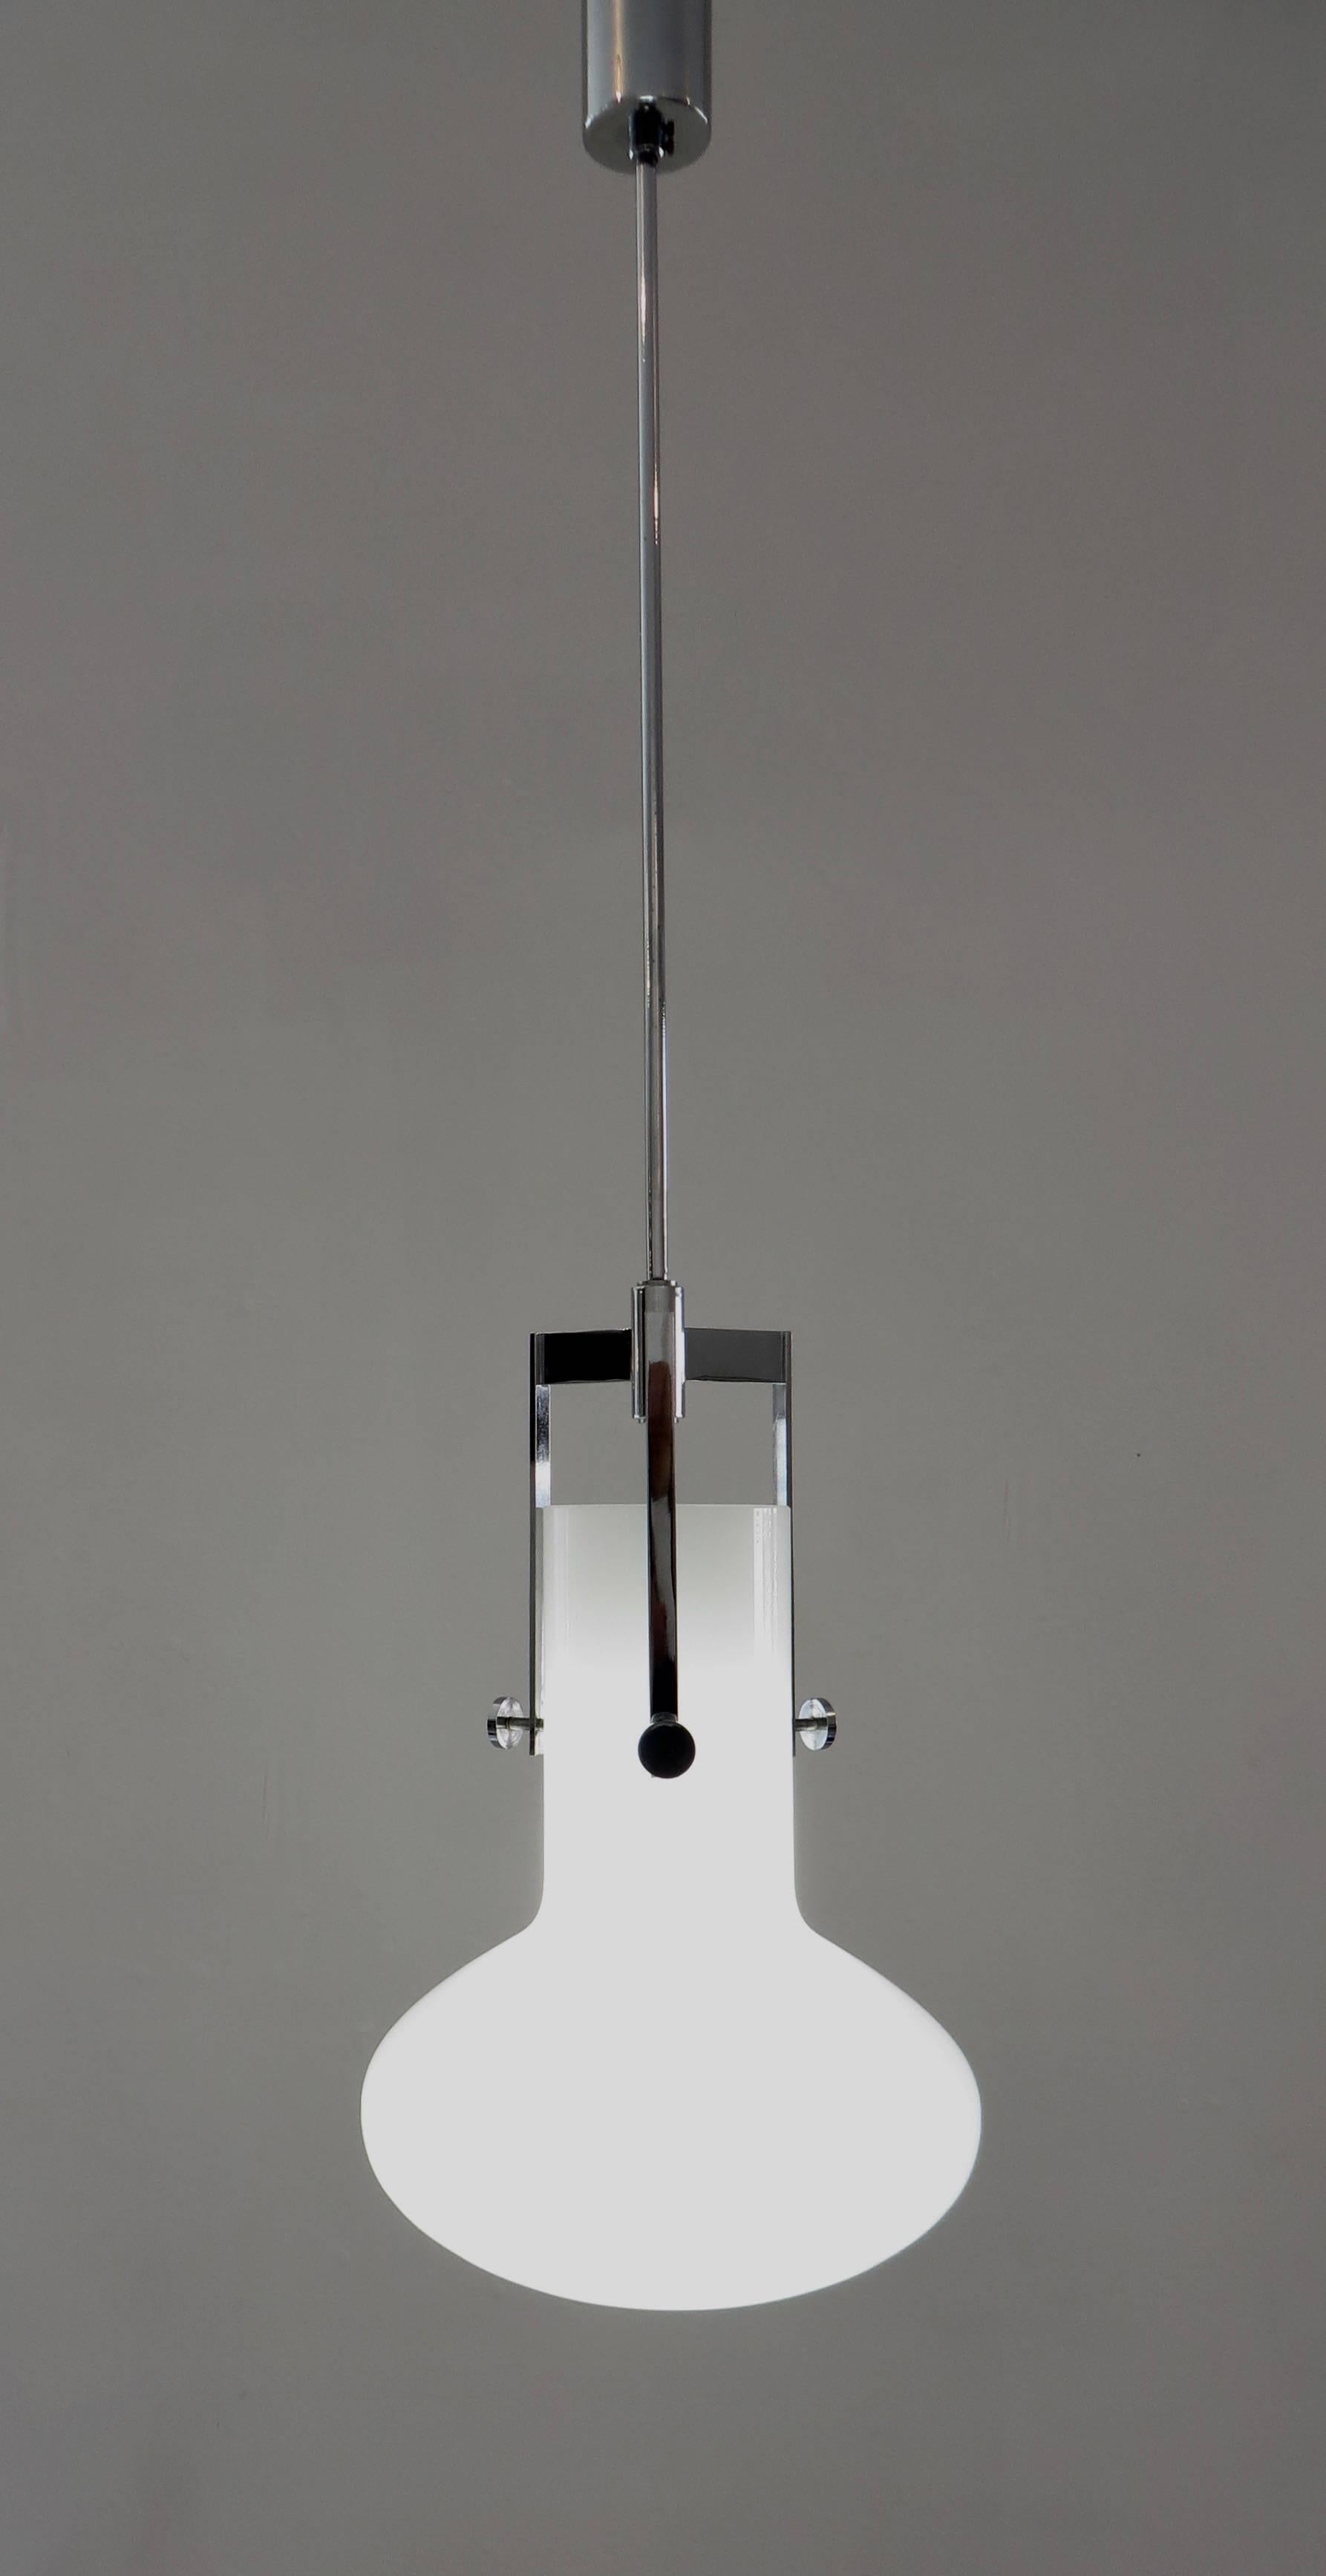 Verre opaque lait opalin et armature chromée conçus par Ignazio Gardella pour Azucena, Italie, 1958. Source lumineuse à une seule ampoule. Câblé pour les USA, peut accepter n'importe quel wattage, led.
Taille totale telle qu'illustrée :
9